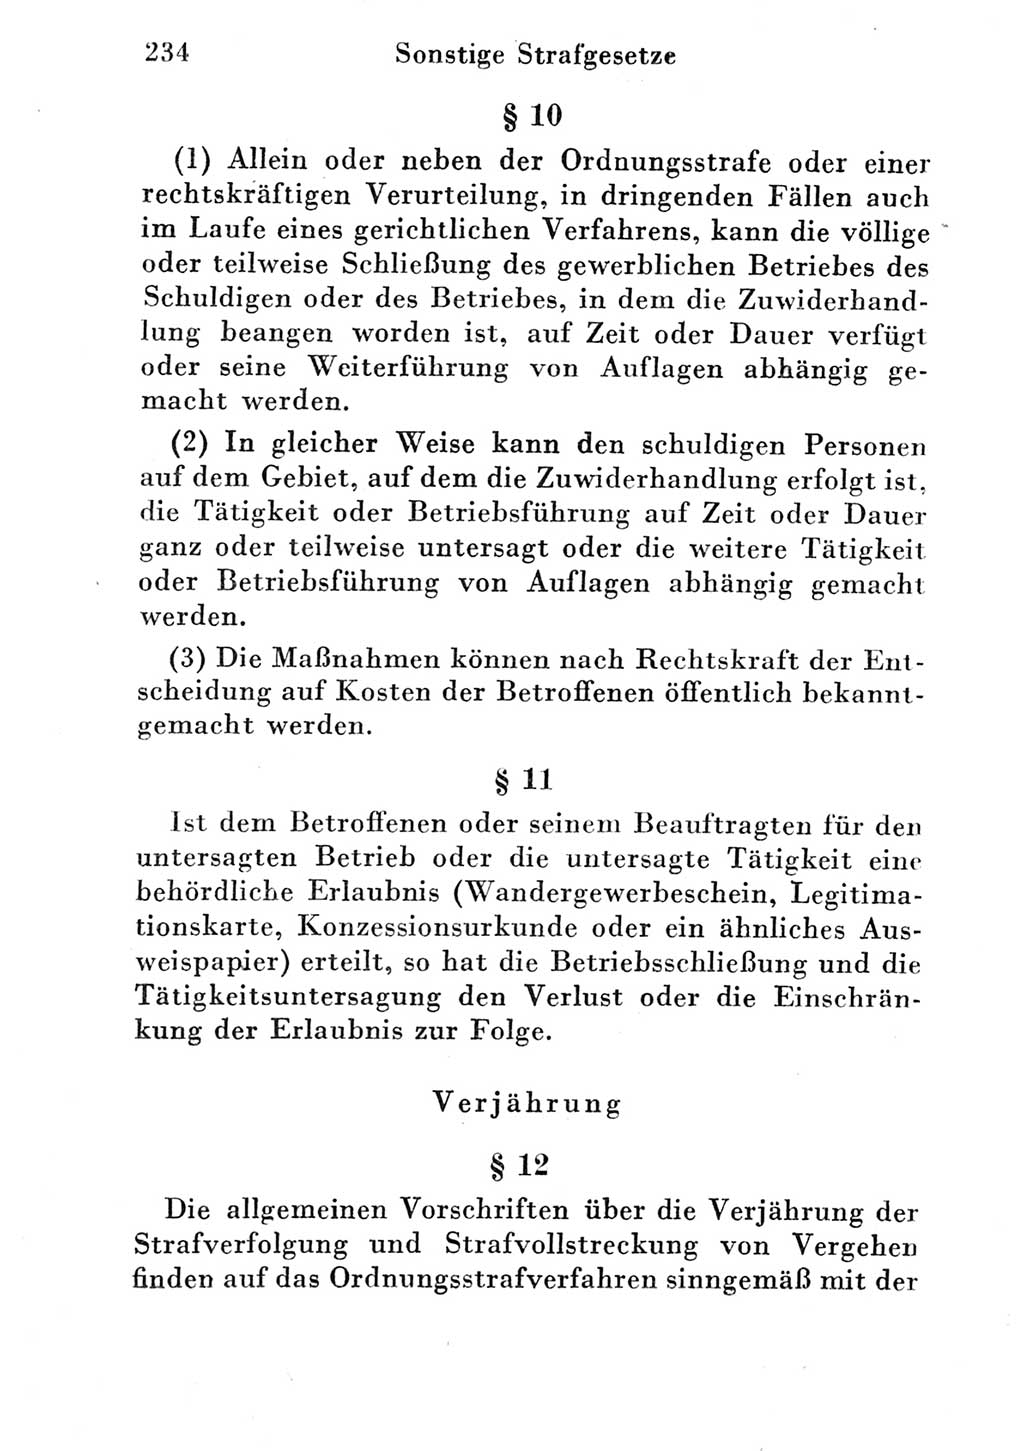 Strafgesetzbuch (StGB) und andere Strafgesetze [Deutsche Demokratische Republik (DDR)] 1951, Seite 234 (StGB Strafges. DDR 1951, S. 234)